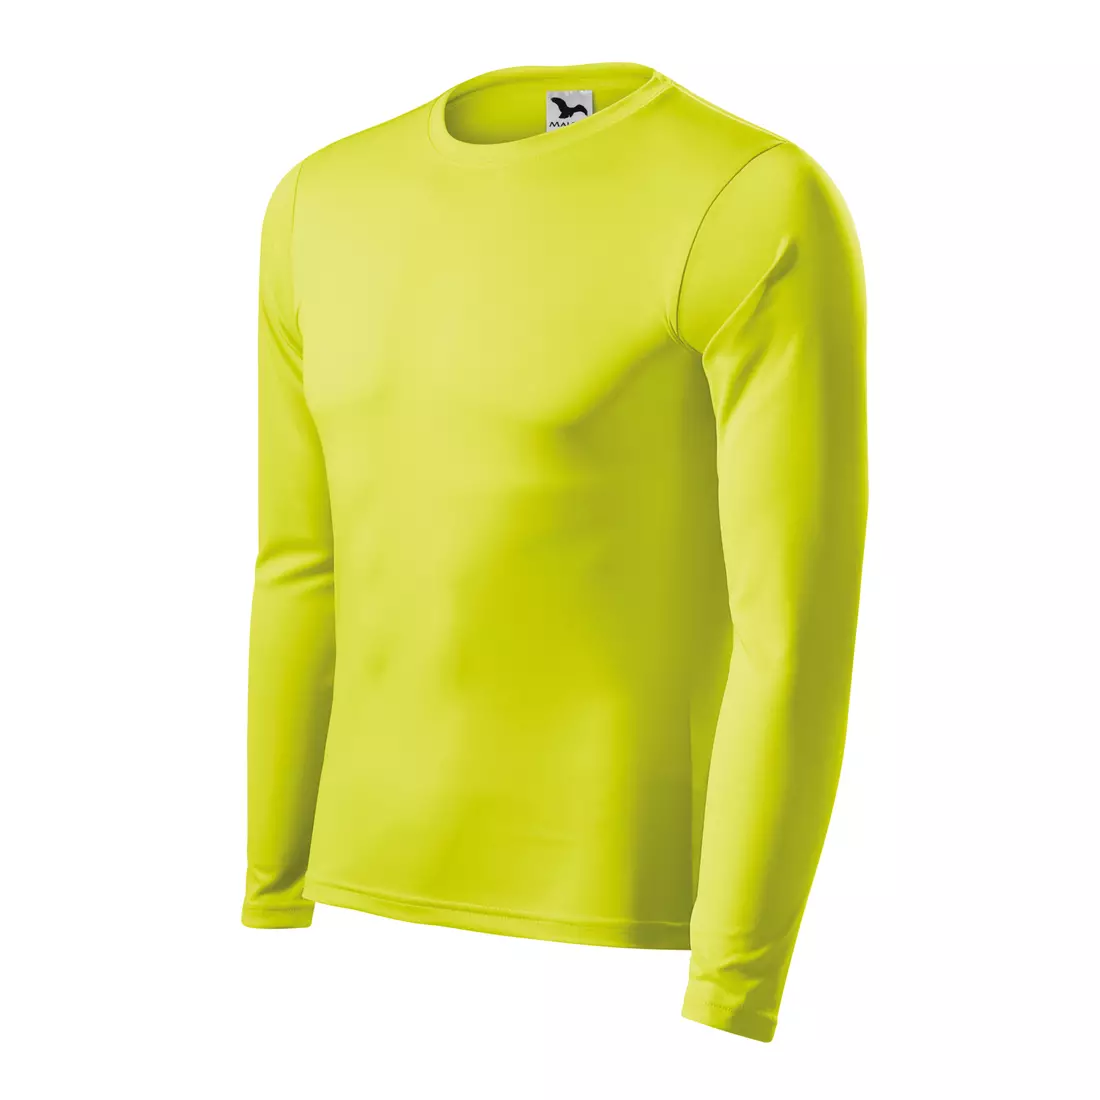 Women Shirt Quick Dry Running T-shirt Long Sleeve Compression Sport Zipper  Shirt